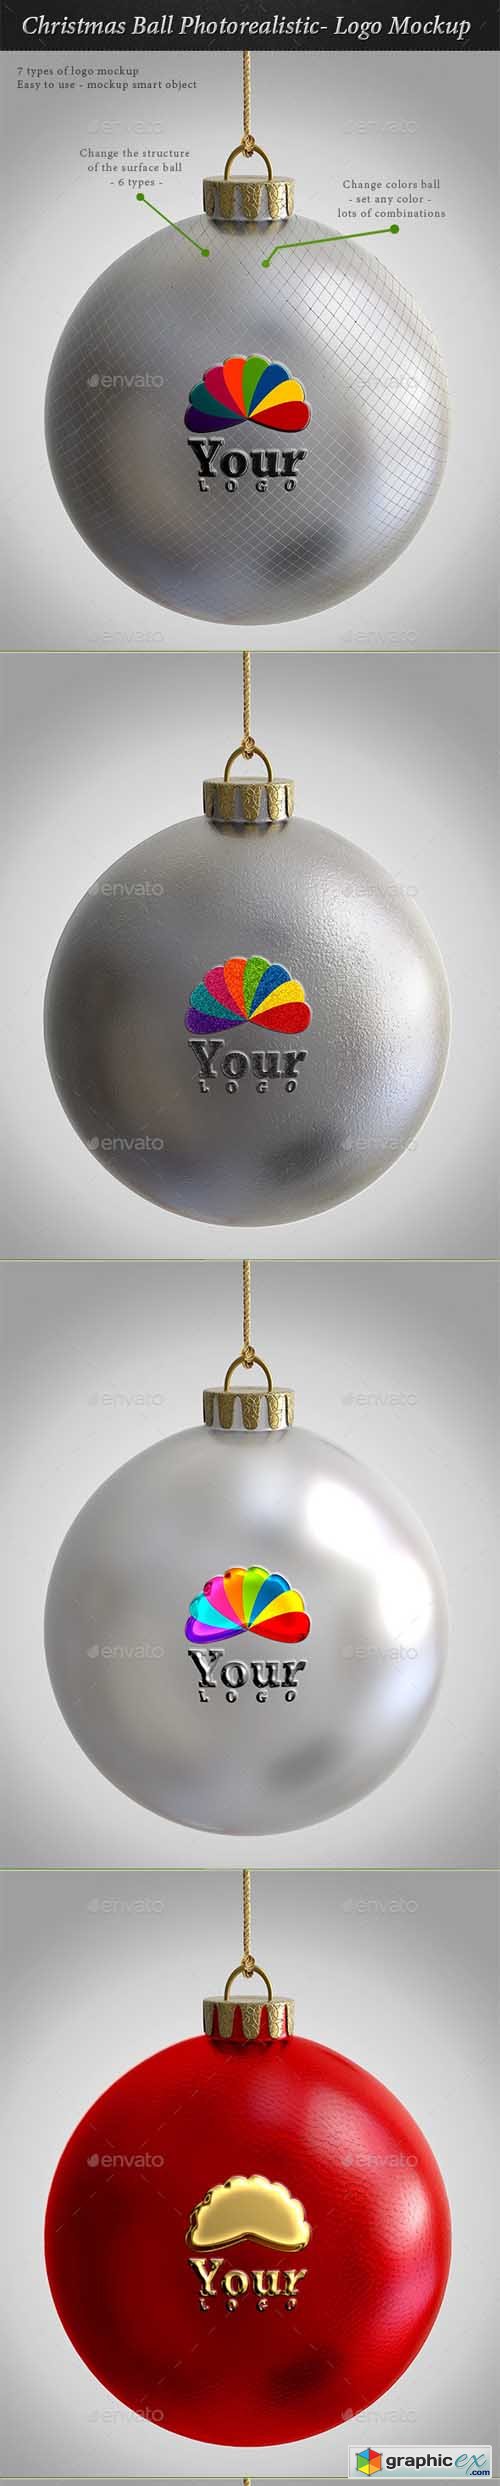 Christmas Ball Photorealistic- Logo Mockup 9535375